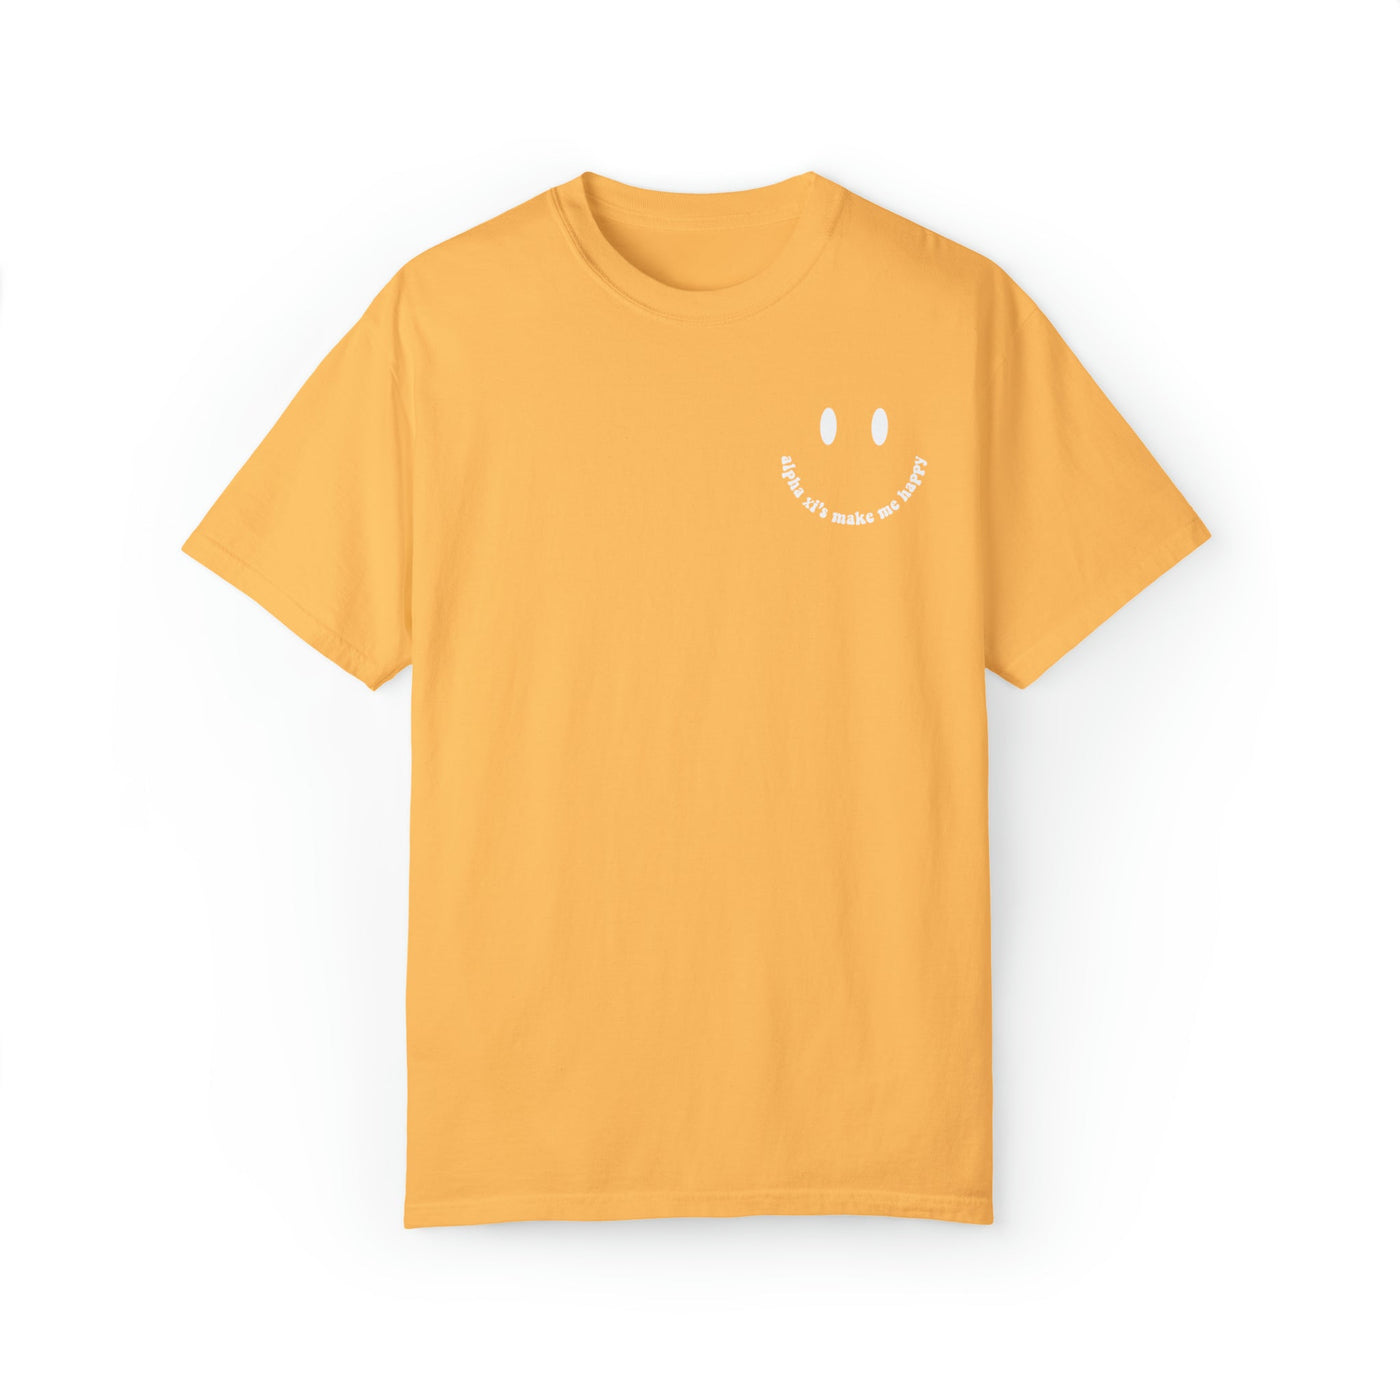 Alpha Xi Delta's Make Me Happy Sorority Comfy T-shirt